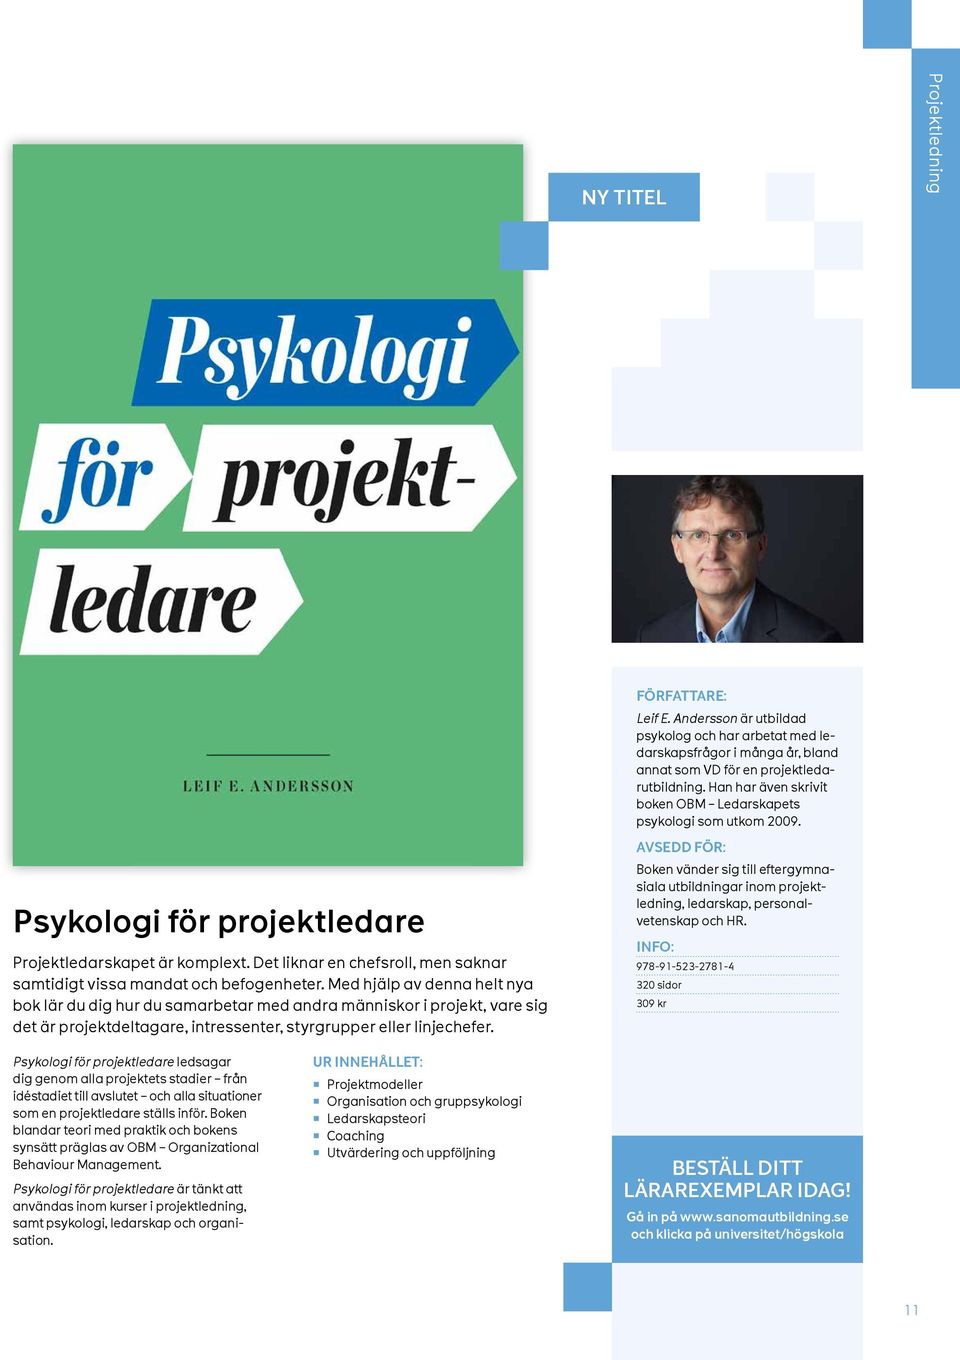 Andersson är utbildad psykolog och har arbetat med ledarskapsfrågor i många år, bland annat som VD för en projektledarutbildning. Han har även skrivit boken OBM Ledarskapets psykologi som utkom 2009.